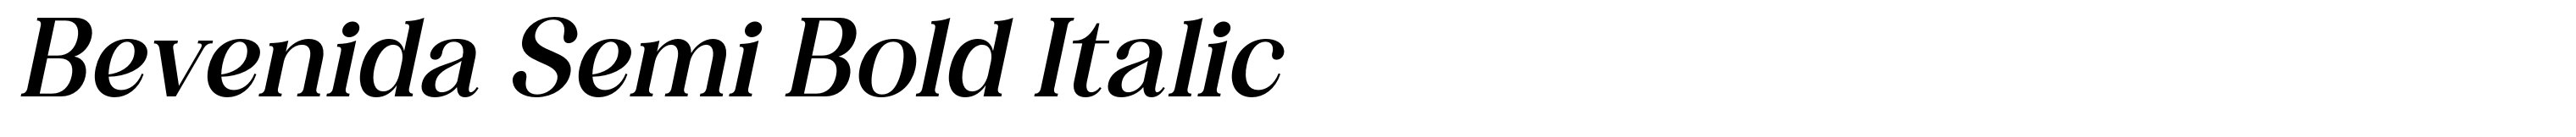 Bevenida Semi Bold Italic